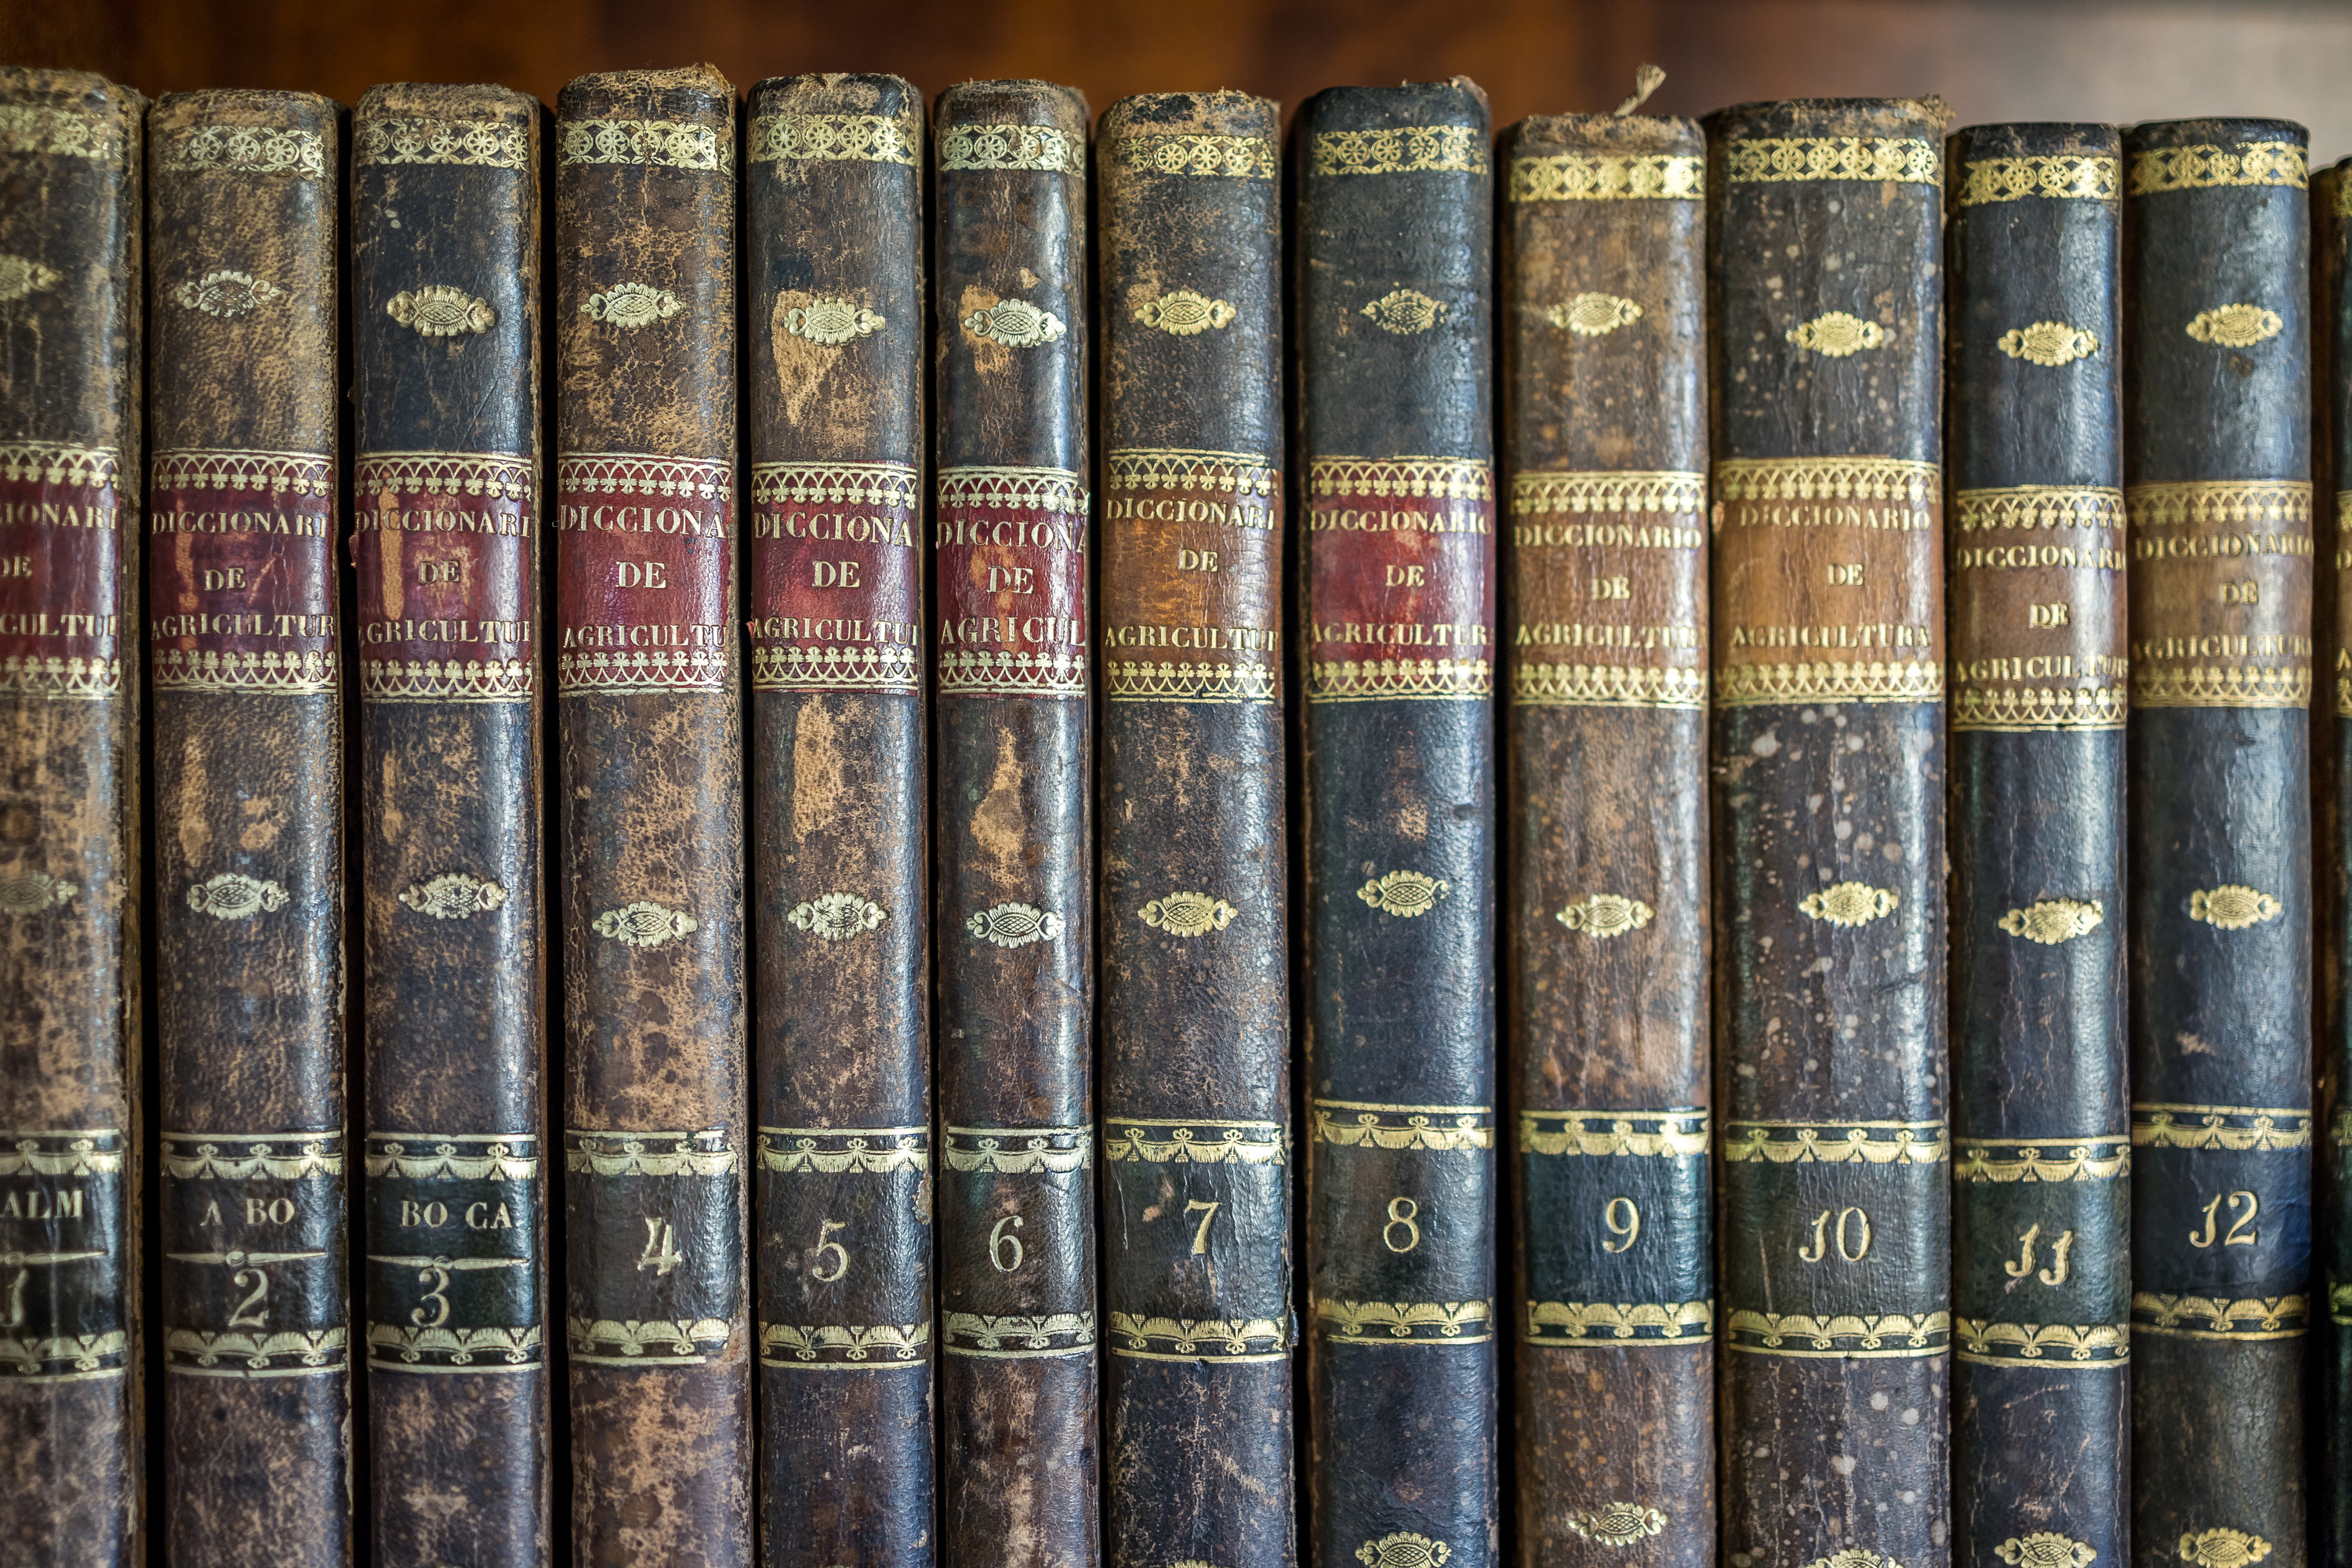 a row of encyclopedias